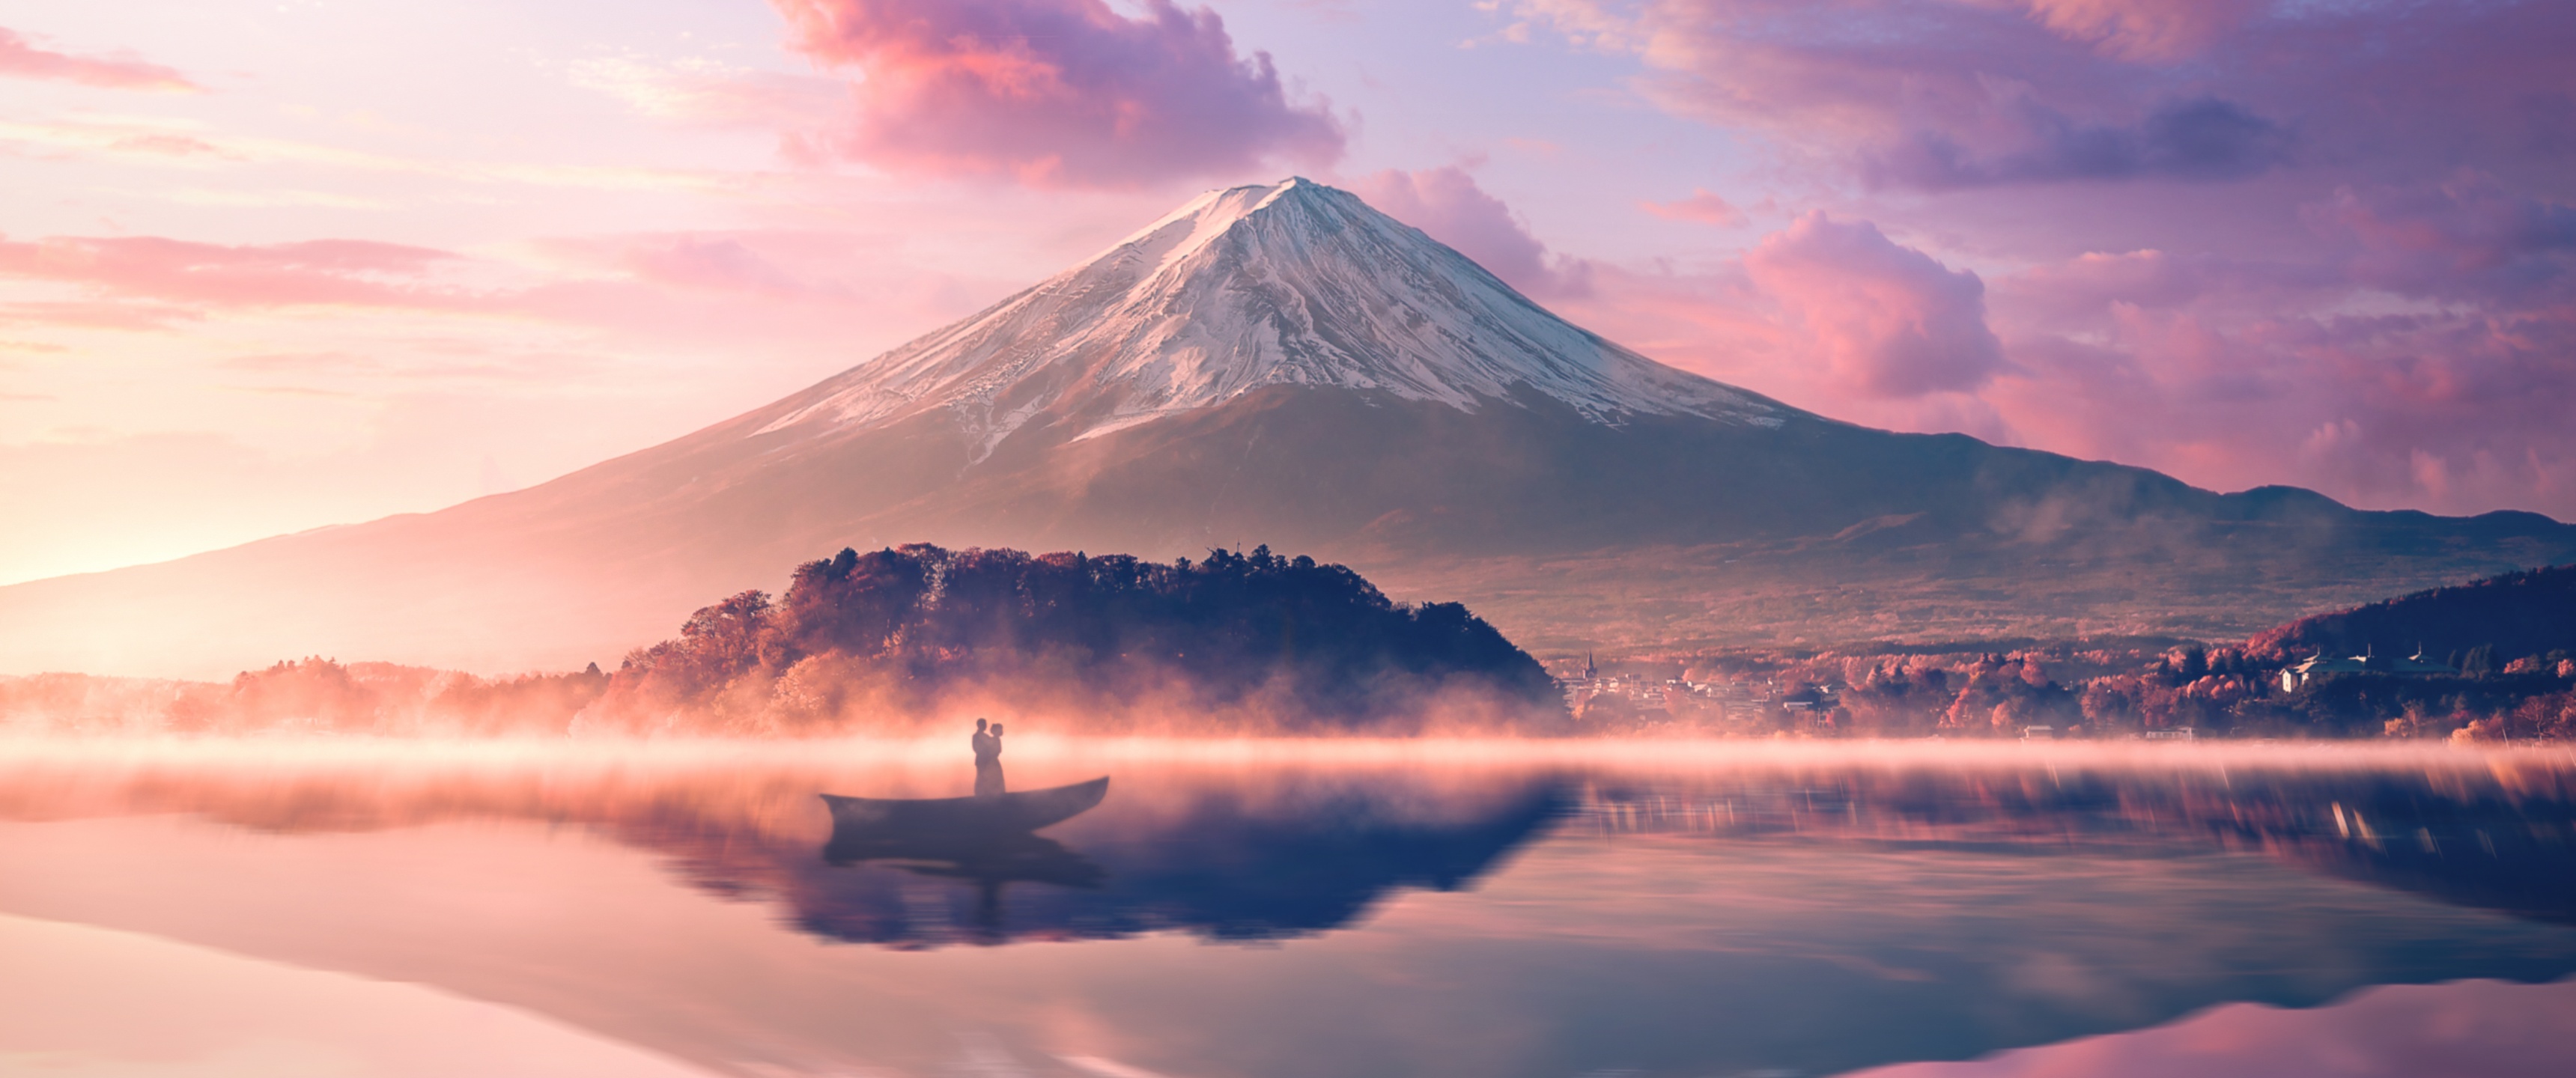 Hình nền Mount Fuji mang lại cho bạn một chuyến phiêu lưu đến đỉnh núi cao nhất Nhật Bản. Với những hình ảnh của ngọn núi đầy quyến rũ và uốn lượn, bạn có thể khám phá bề mặt bỏng cháy của thế giới loài hoa thực vật, đồng thời tận hưởng một cảm giác thăng hoa vô cùng đặc biệt. Hãy xem ngay những hình ảnh nền Mount Fuji độc đáo này.